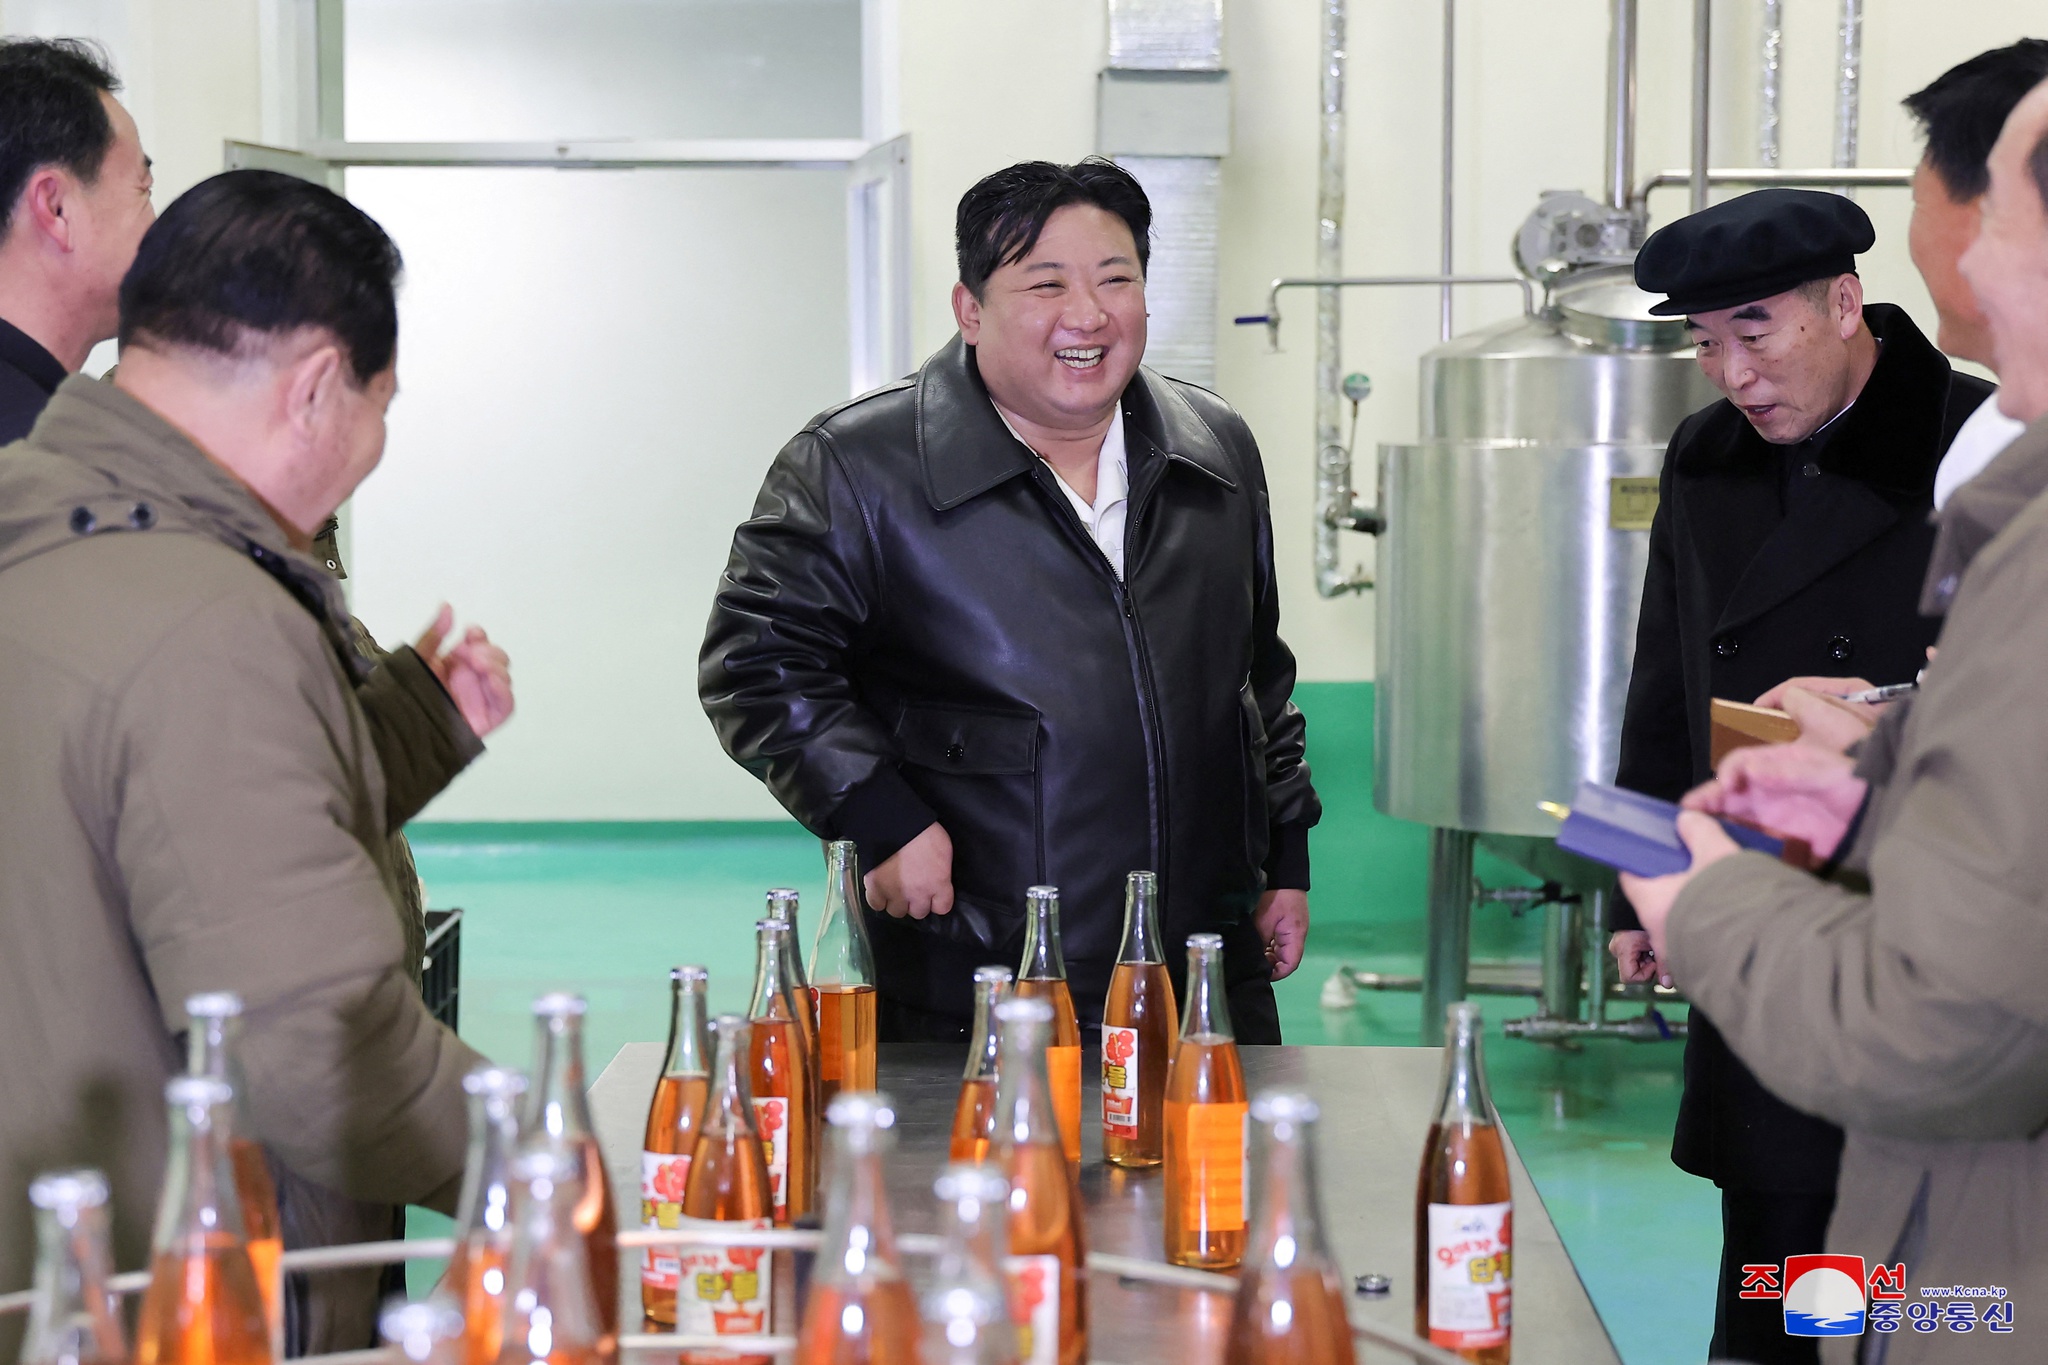 Coreia do Norte anuncia fim de esforços de reunificação